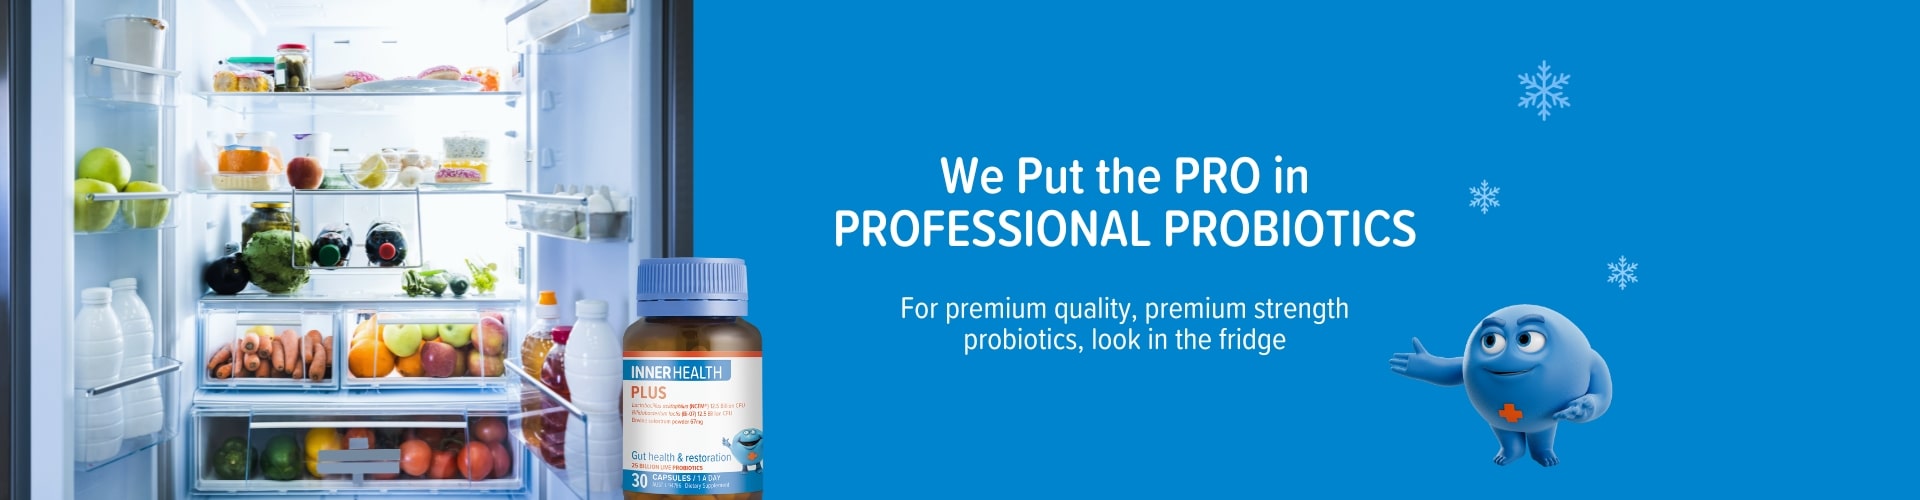 We Put the PRO in Professional Probiotics | For premium quality, premium strength probiotics, look in the fridge